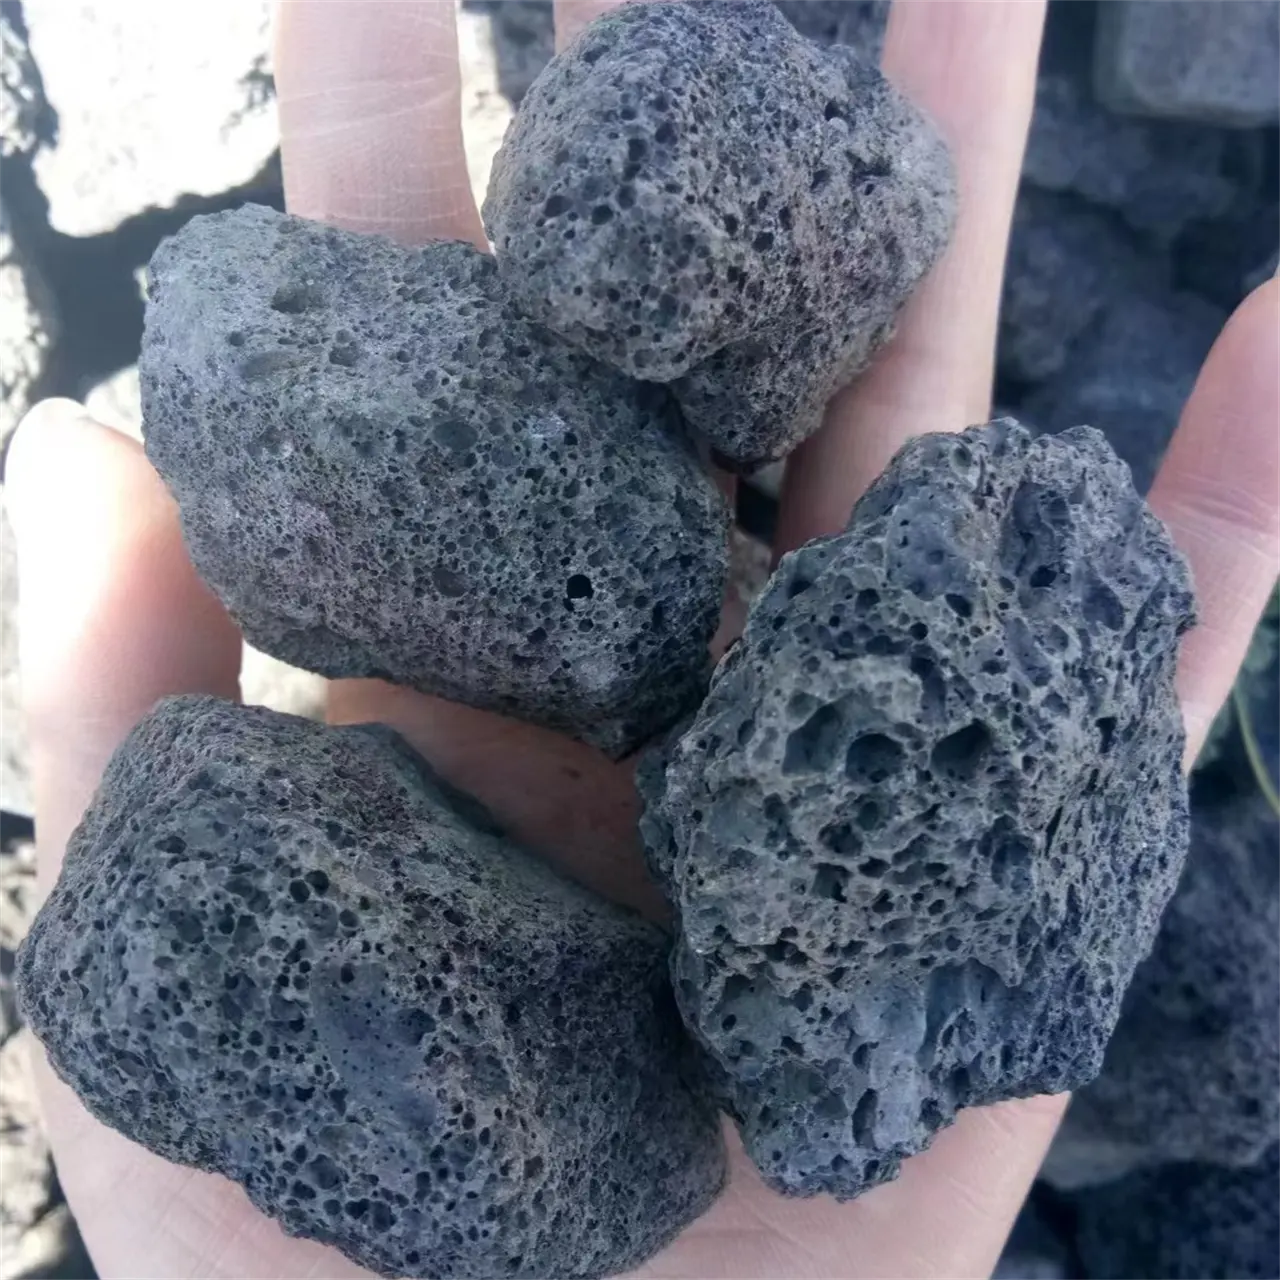 काले लावा रॉक ज्वालामुखीय परिदृश्य पत्थर सजावटी जल निस्पंदन और आवश्यक तेल के लिए